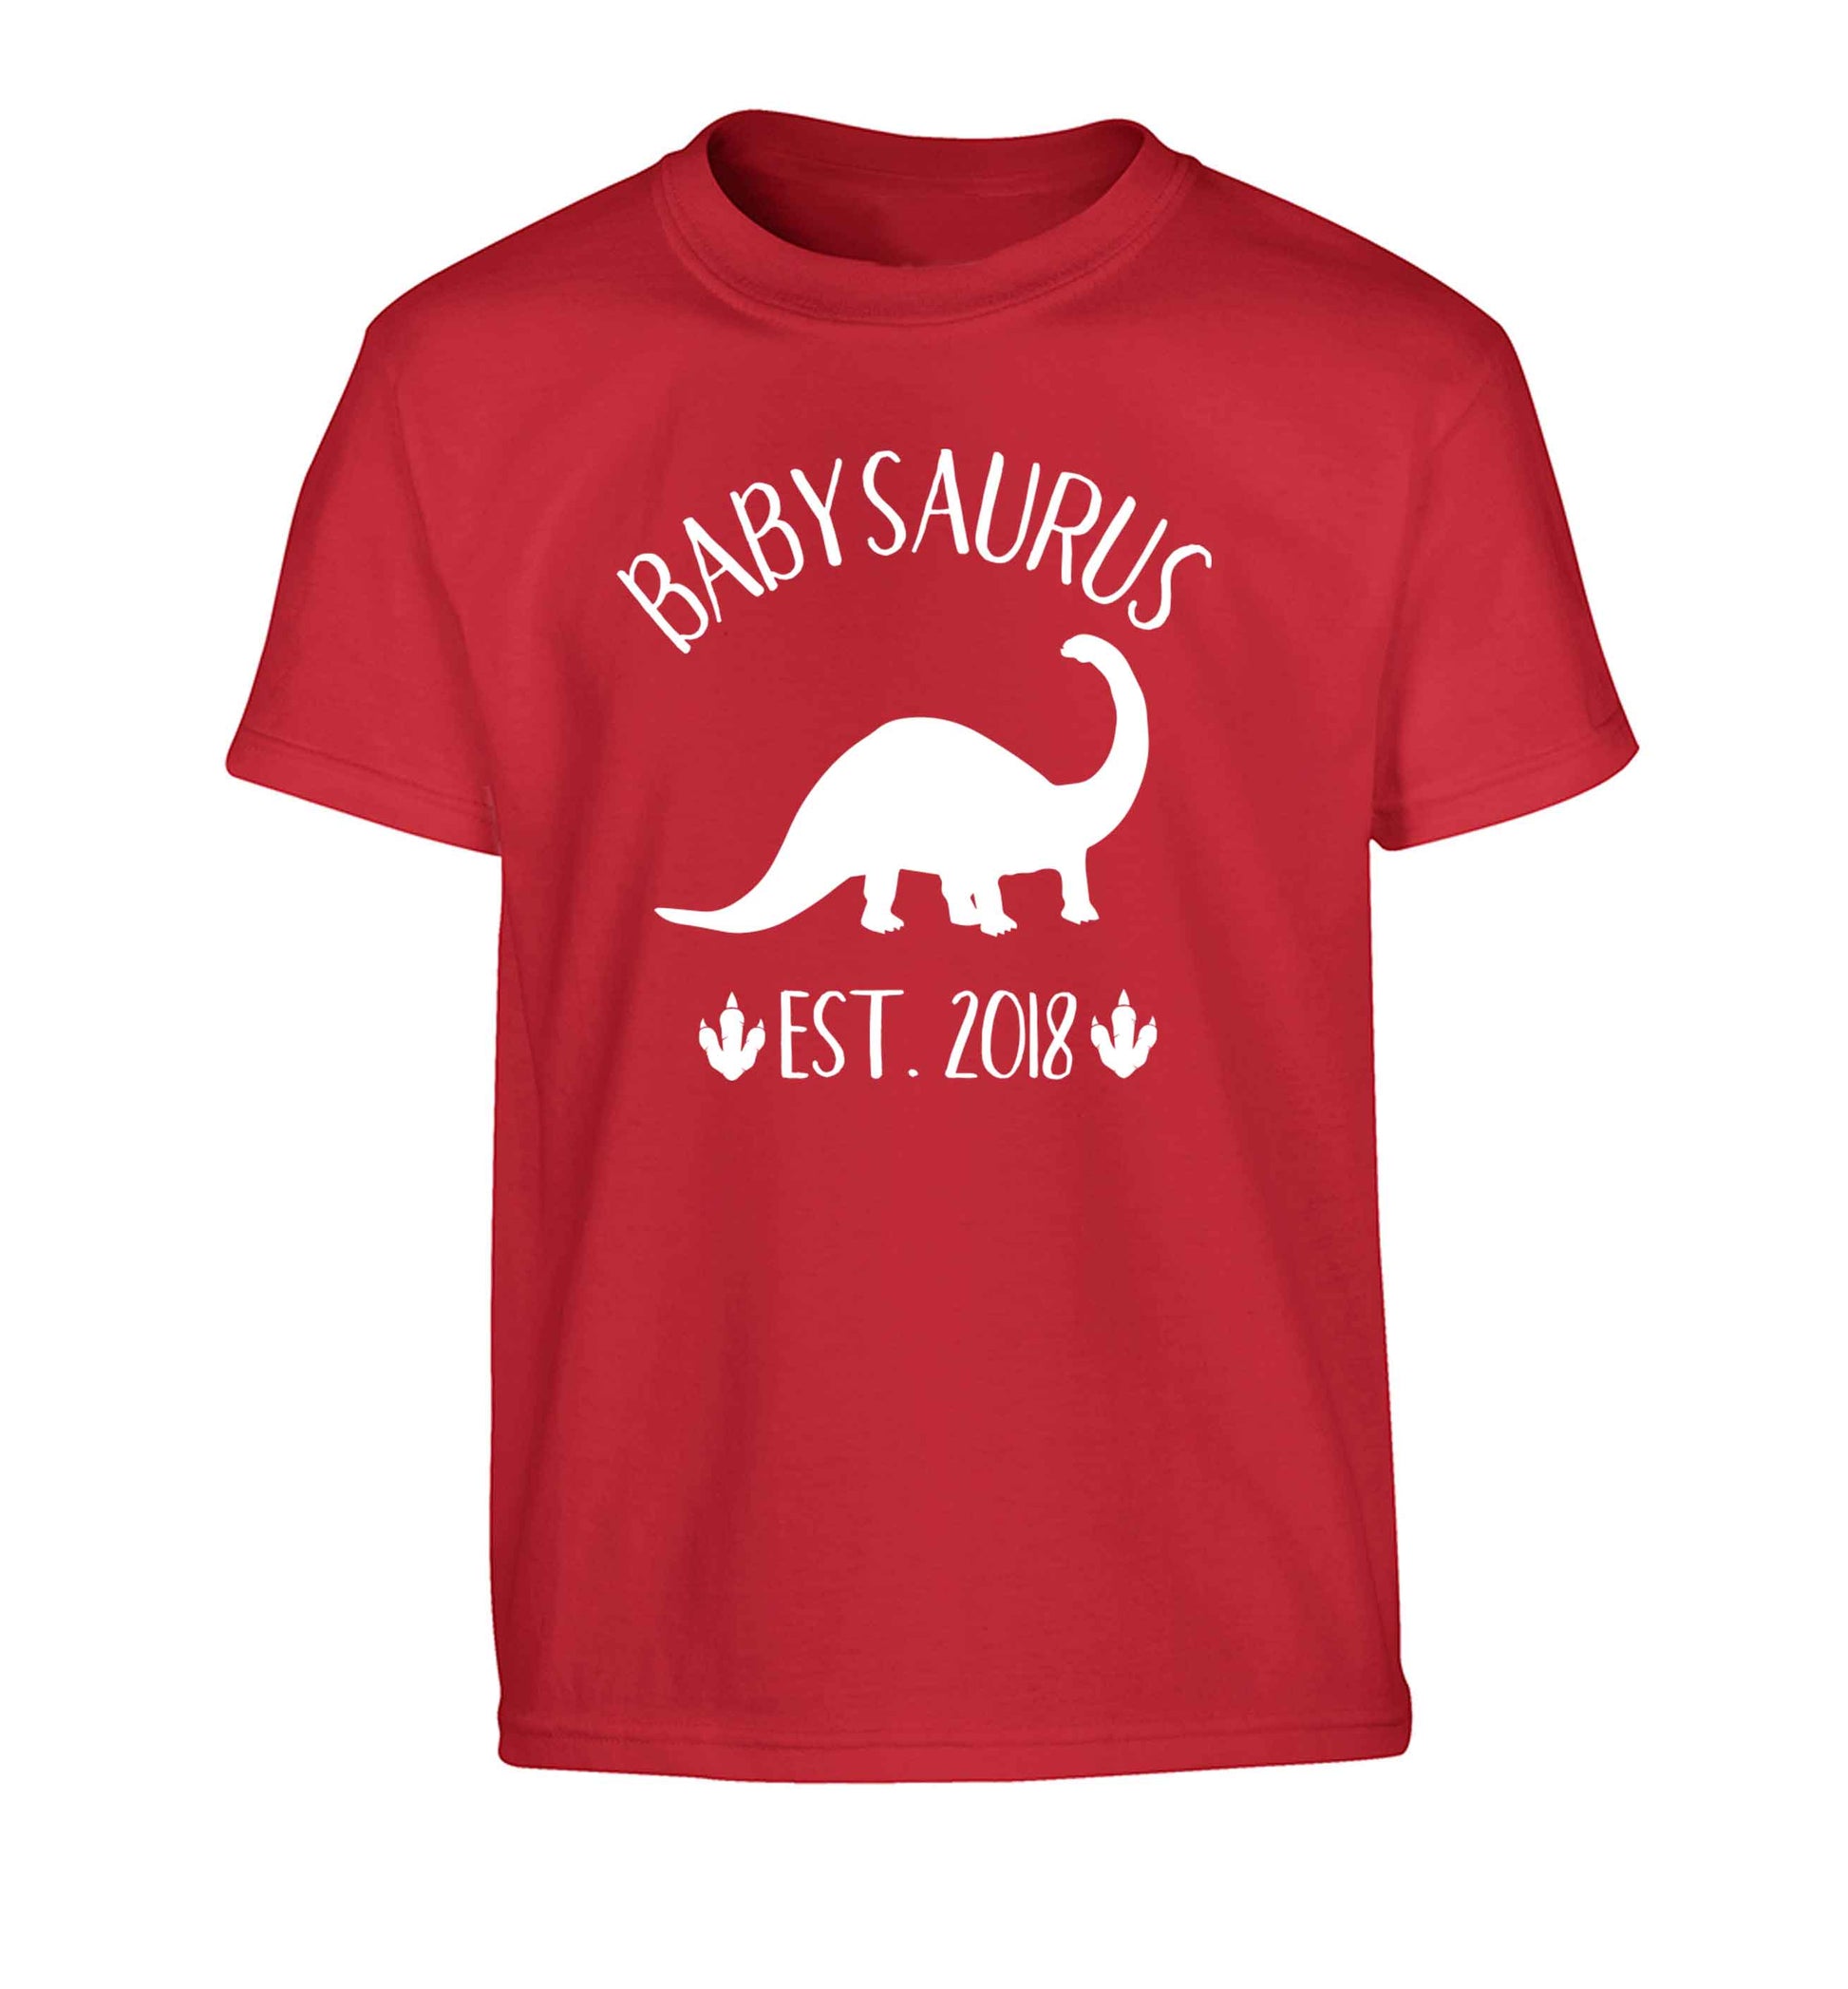 Personalised babysaurus since (custom date) Children's red Tshirt 12-13 Years